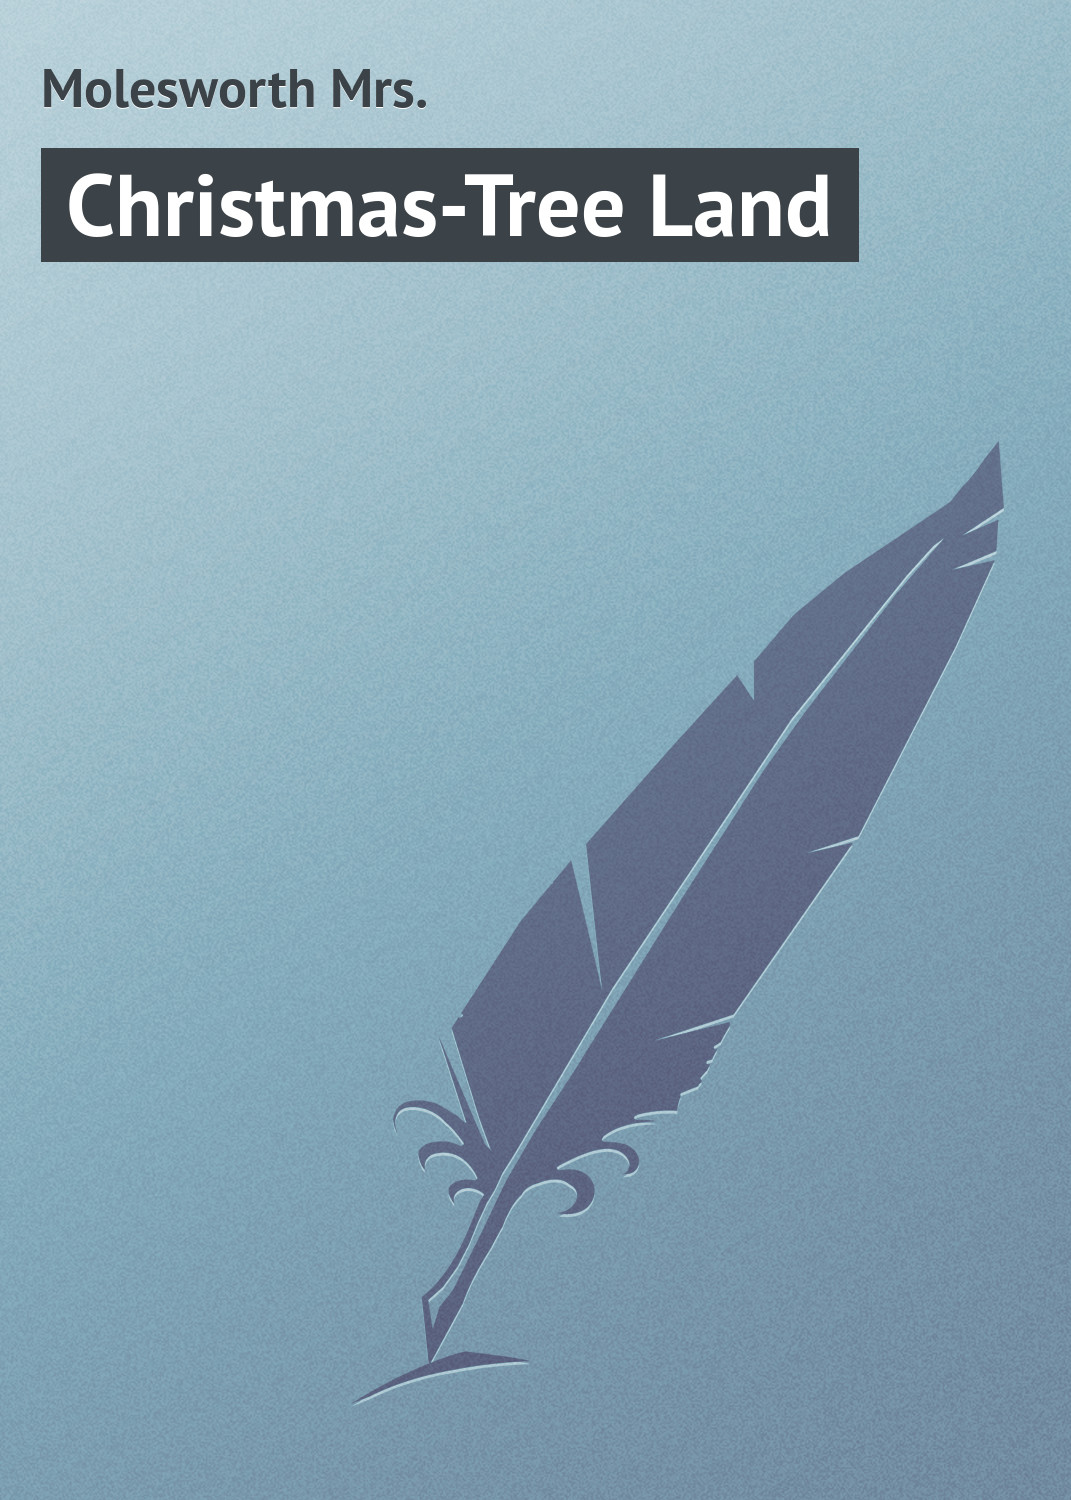 Книга Christmas-Tree Land из серии , созданная Mrs. Molesworth, может относится к жанру Зарубежная классика. Стоимость электронной книги Christmas-Tree Land с идентификатором 23165171 составляет 5.99 руб.